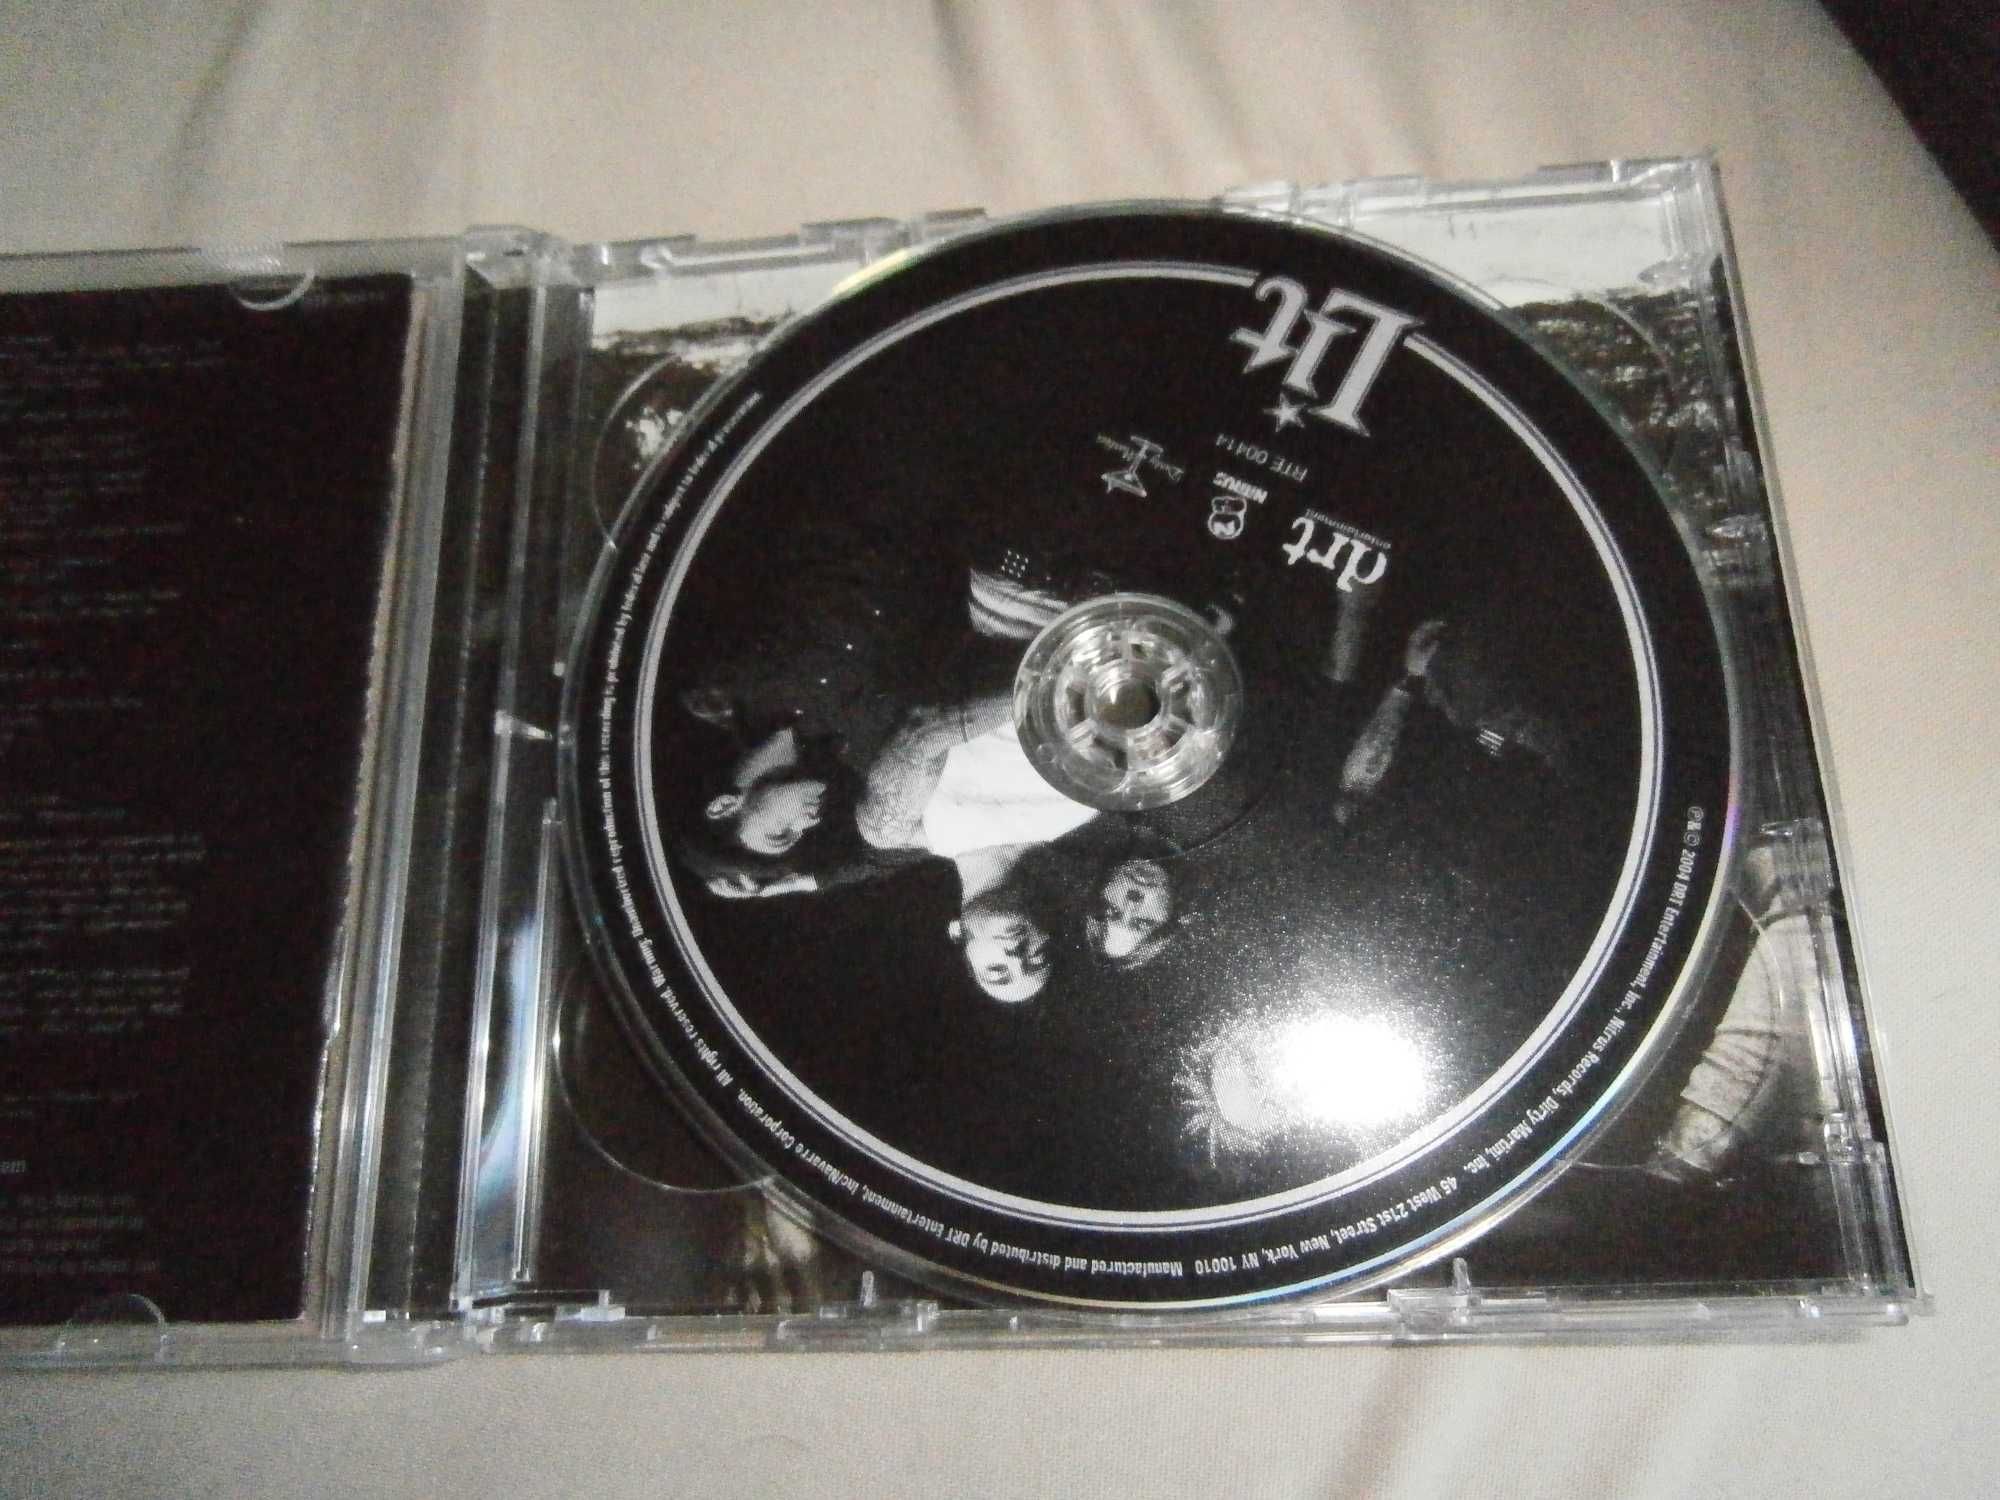 Lit - Lit CD+DVD 2004